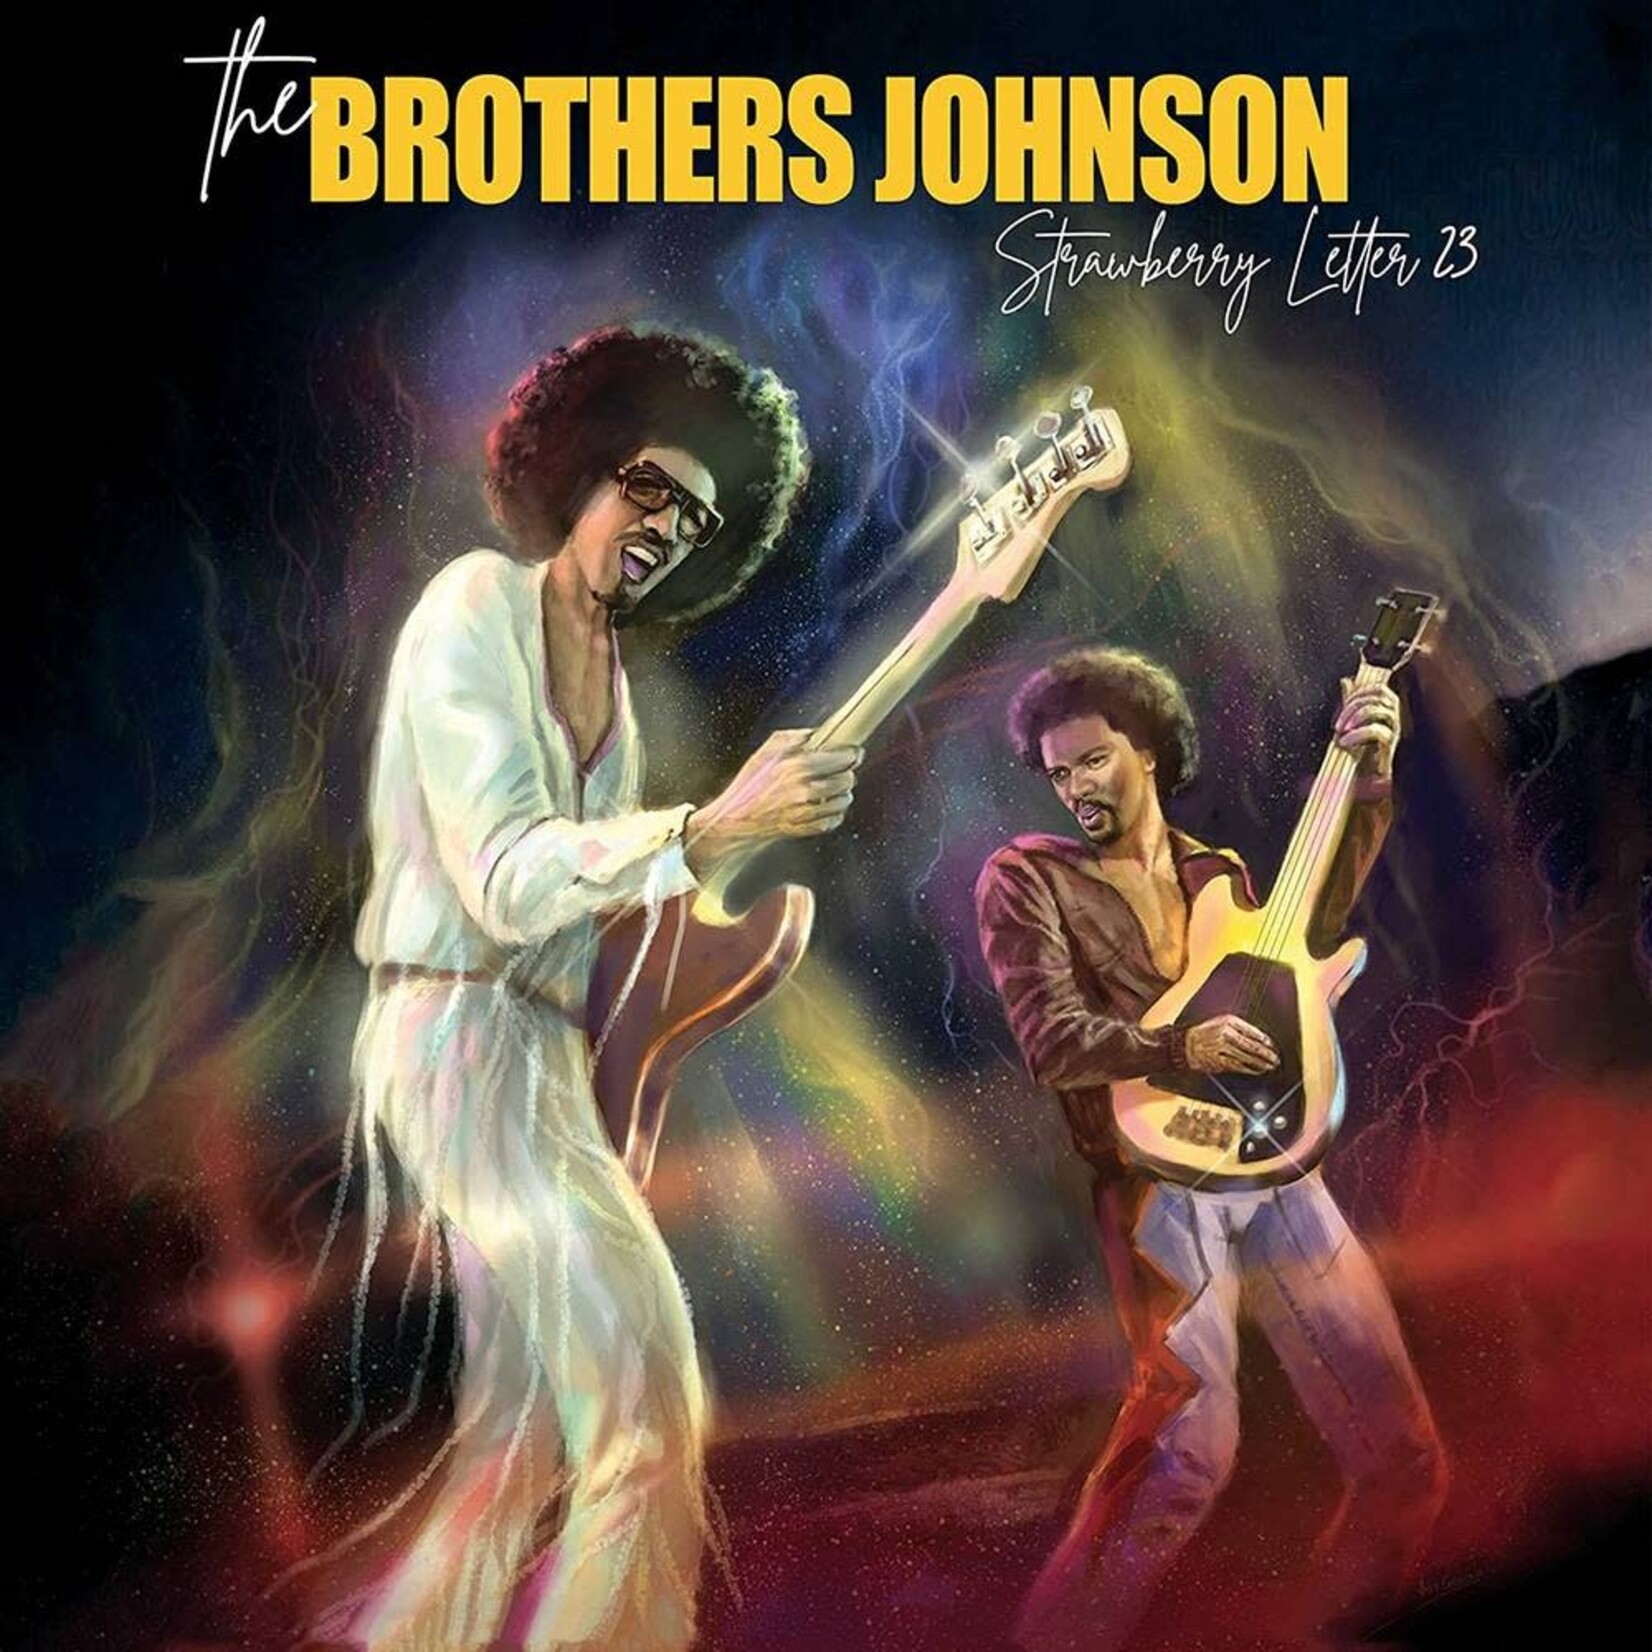 [New] Brothers Johnson: Strawberry Letter 23 (red & yellow splatter vinyl) [GOLDENLANE]